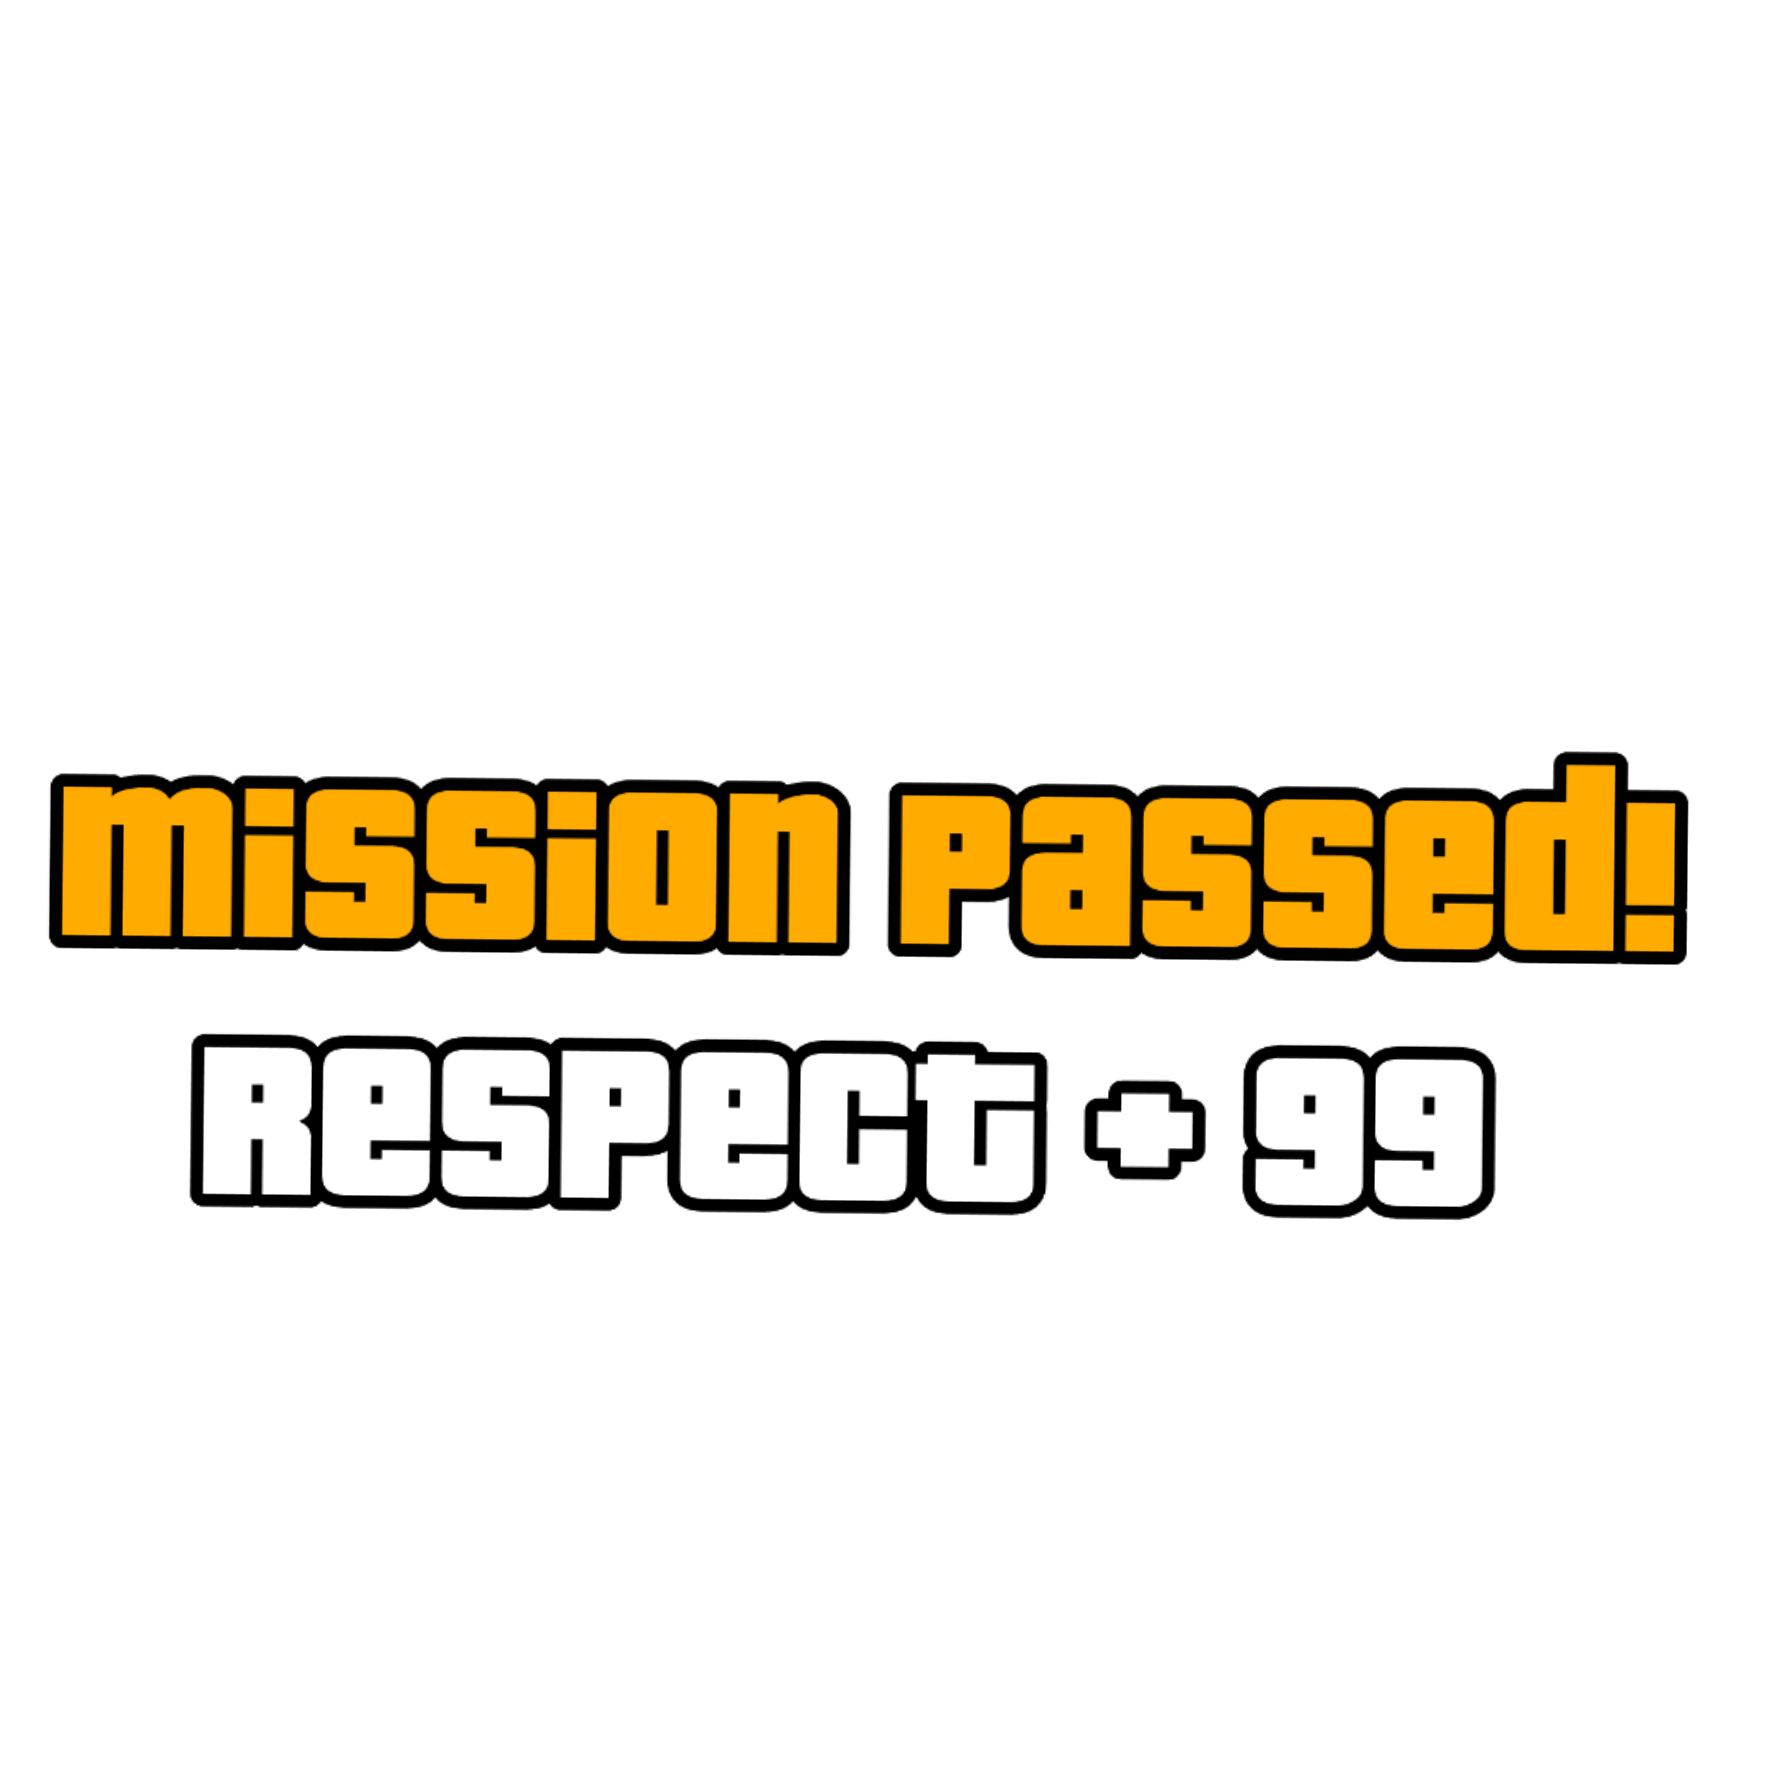 ГТА Сан андреас Mission complete. GTA Mission Passed. Mission complete respect+ GTA. Mission Passed без фона.